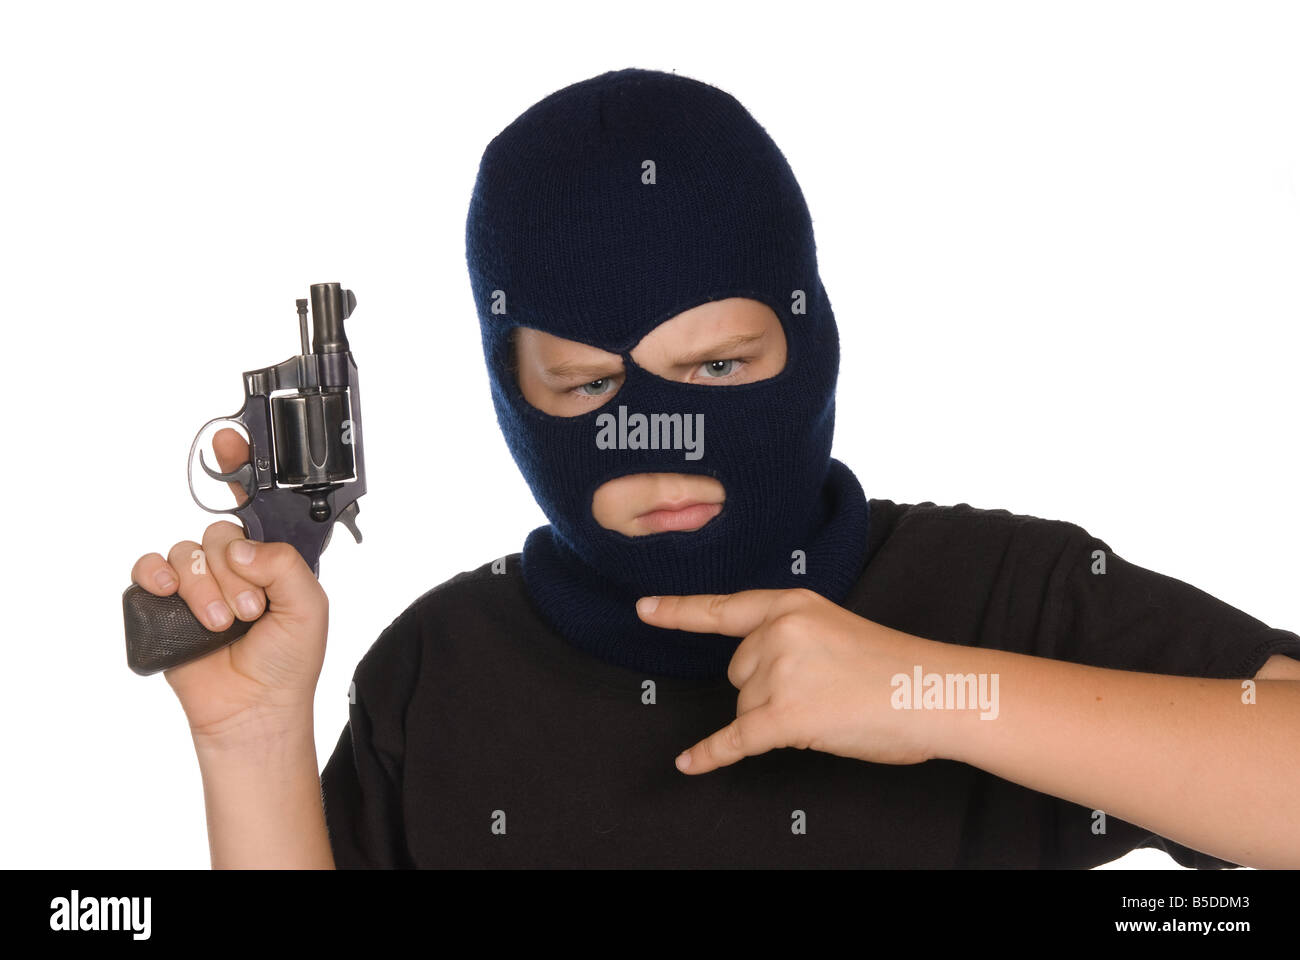 Un jeune garçon clignote sa bande signe et arme pour montrer son engagement envers le crime et de mauvaises manières Banque D'Images